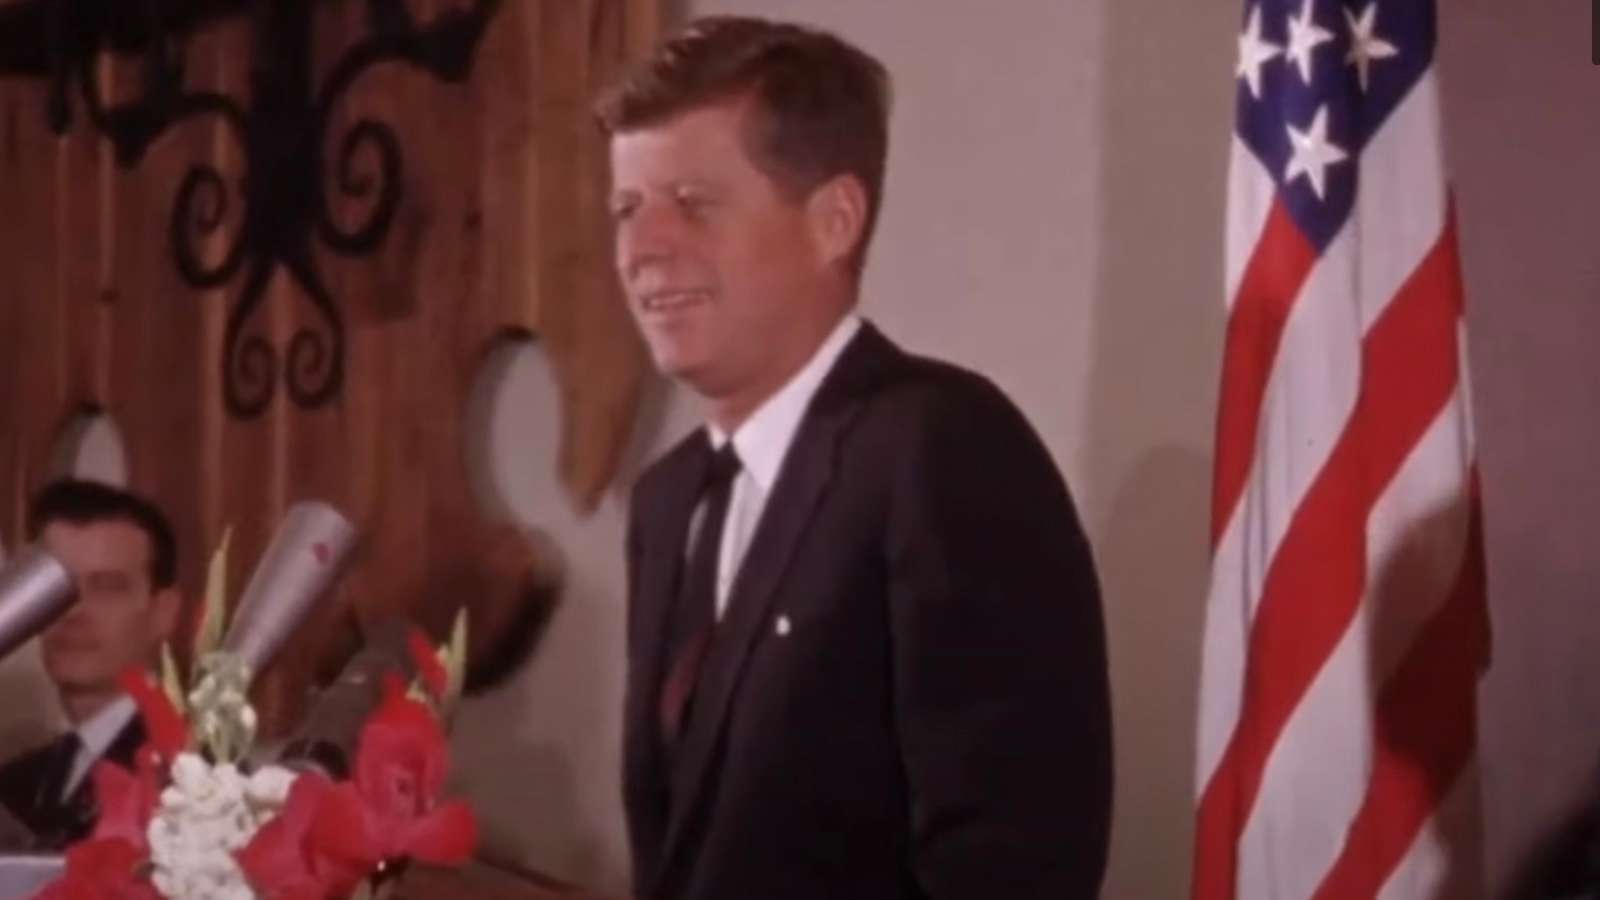 Still of former President John F Kennedy